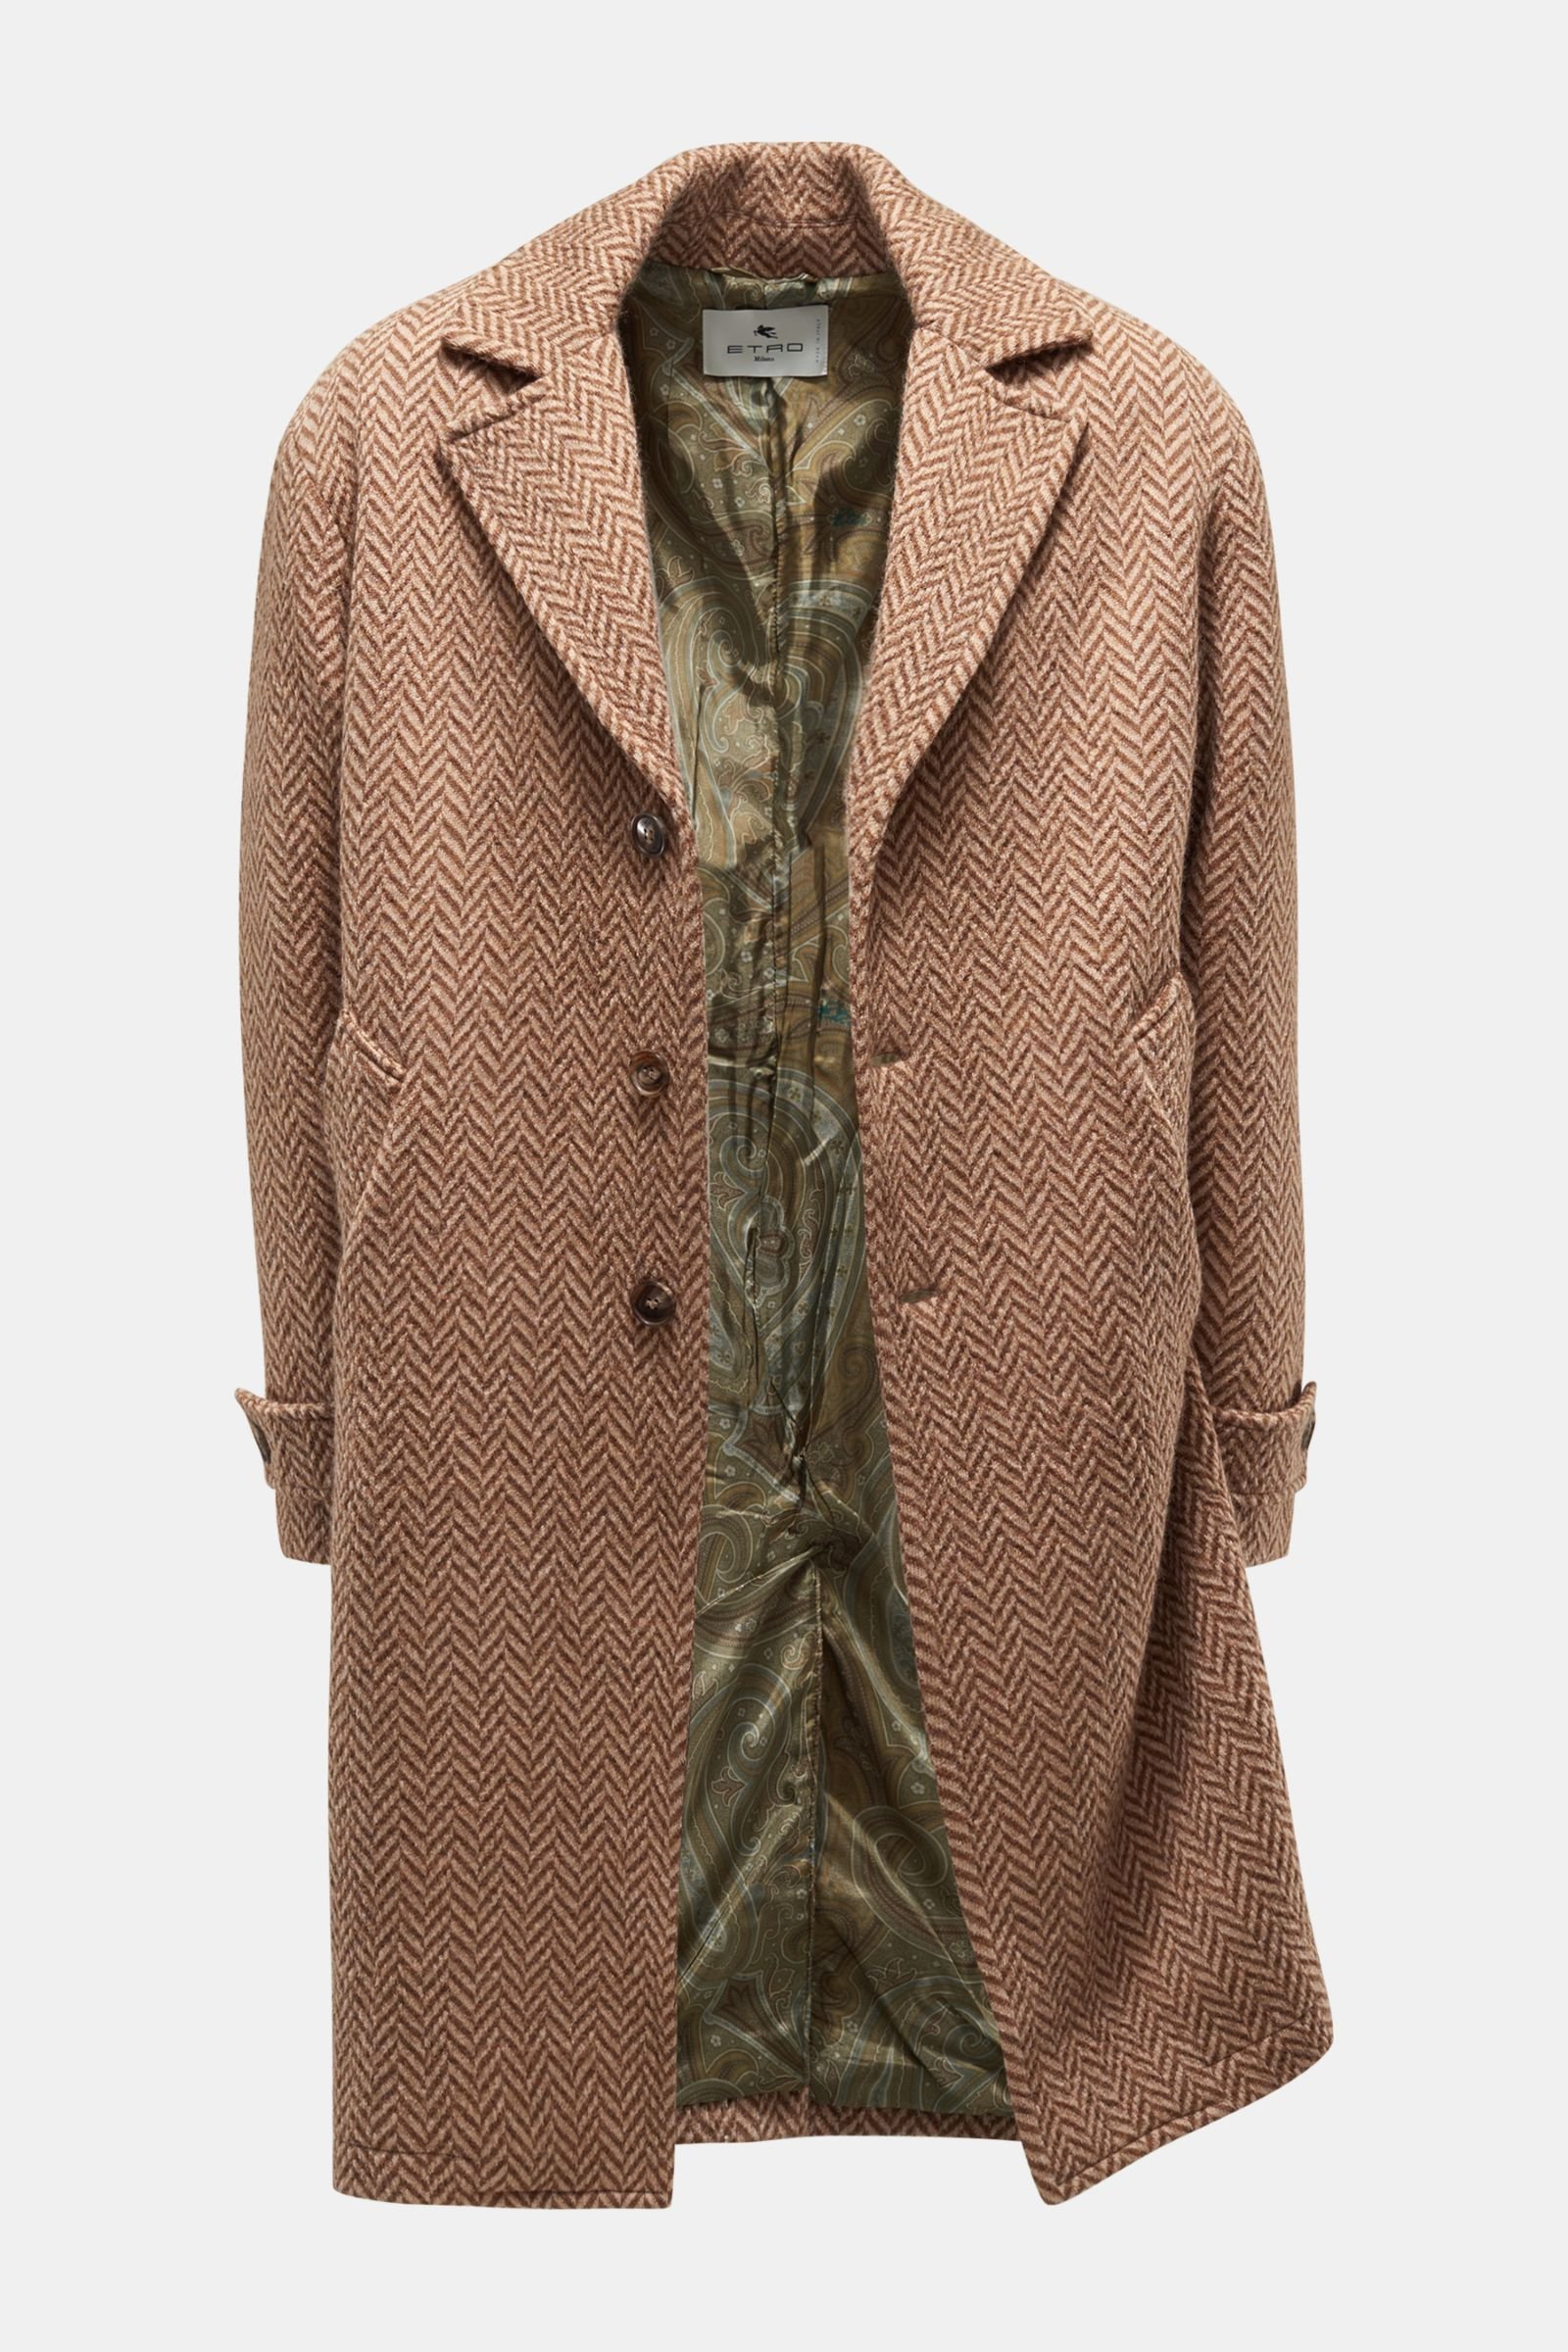 Wool coat light brown/brown patterned